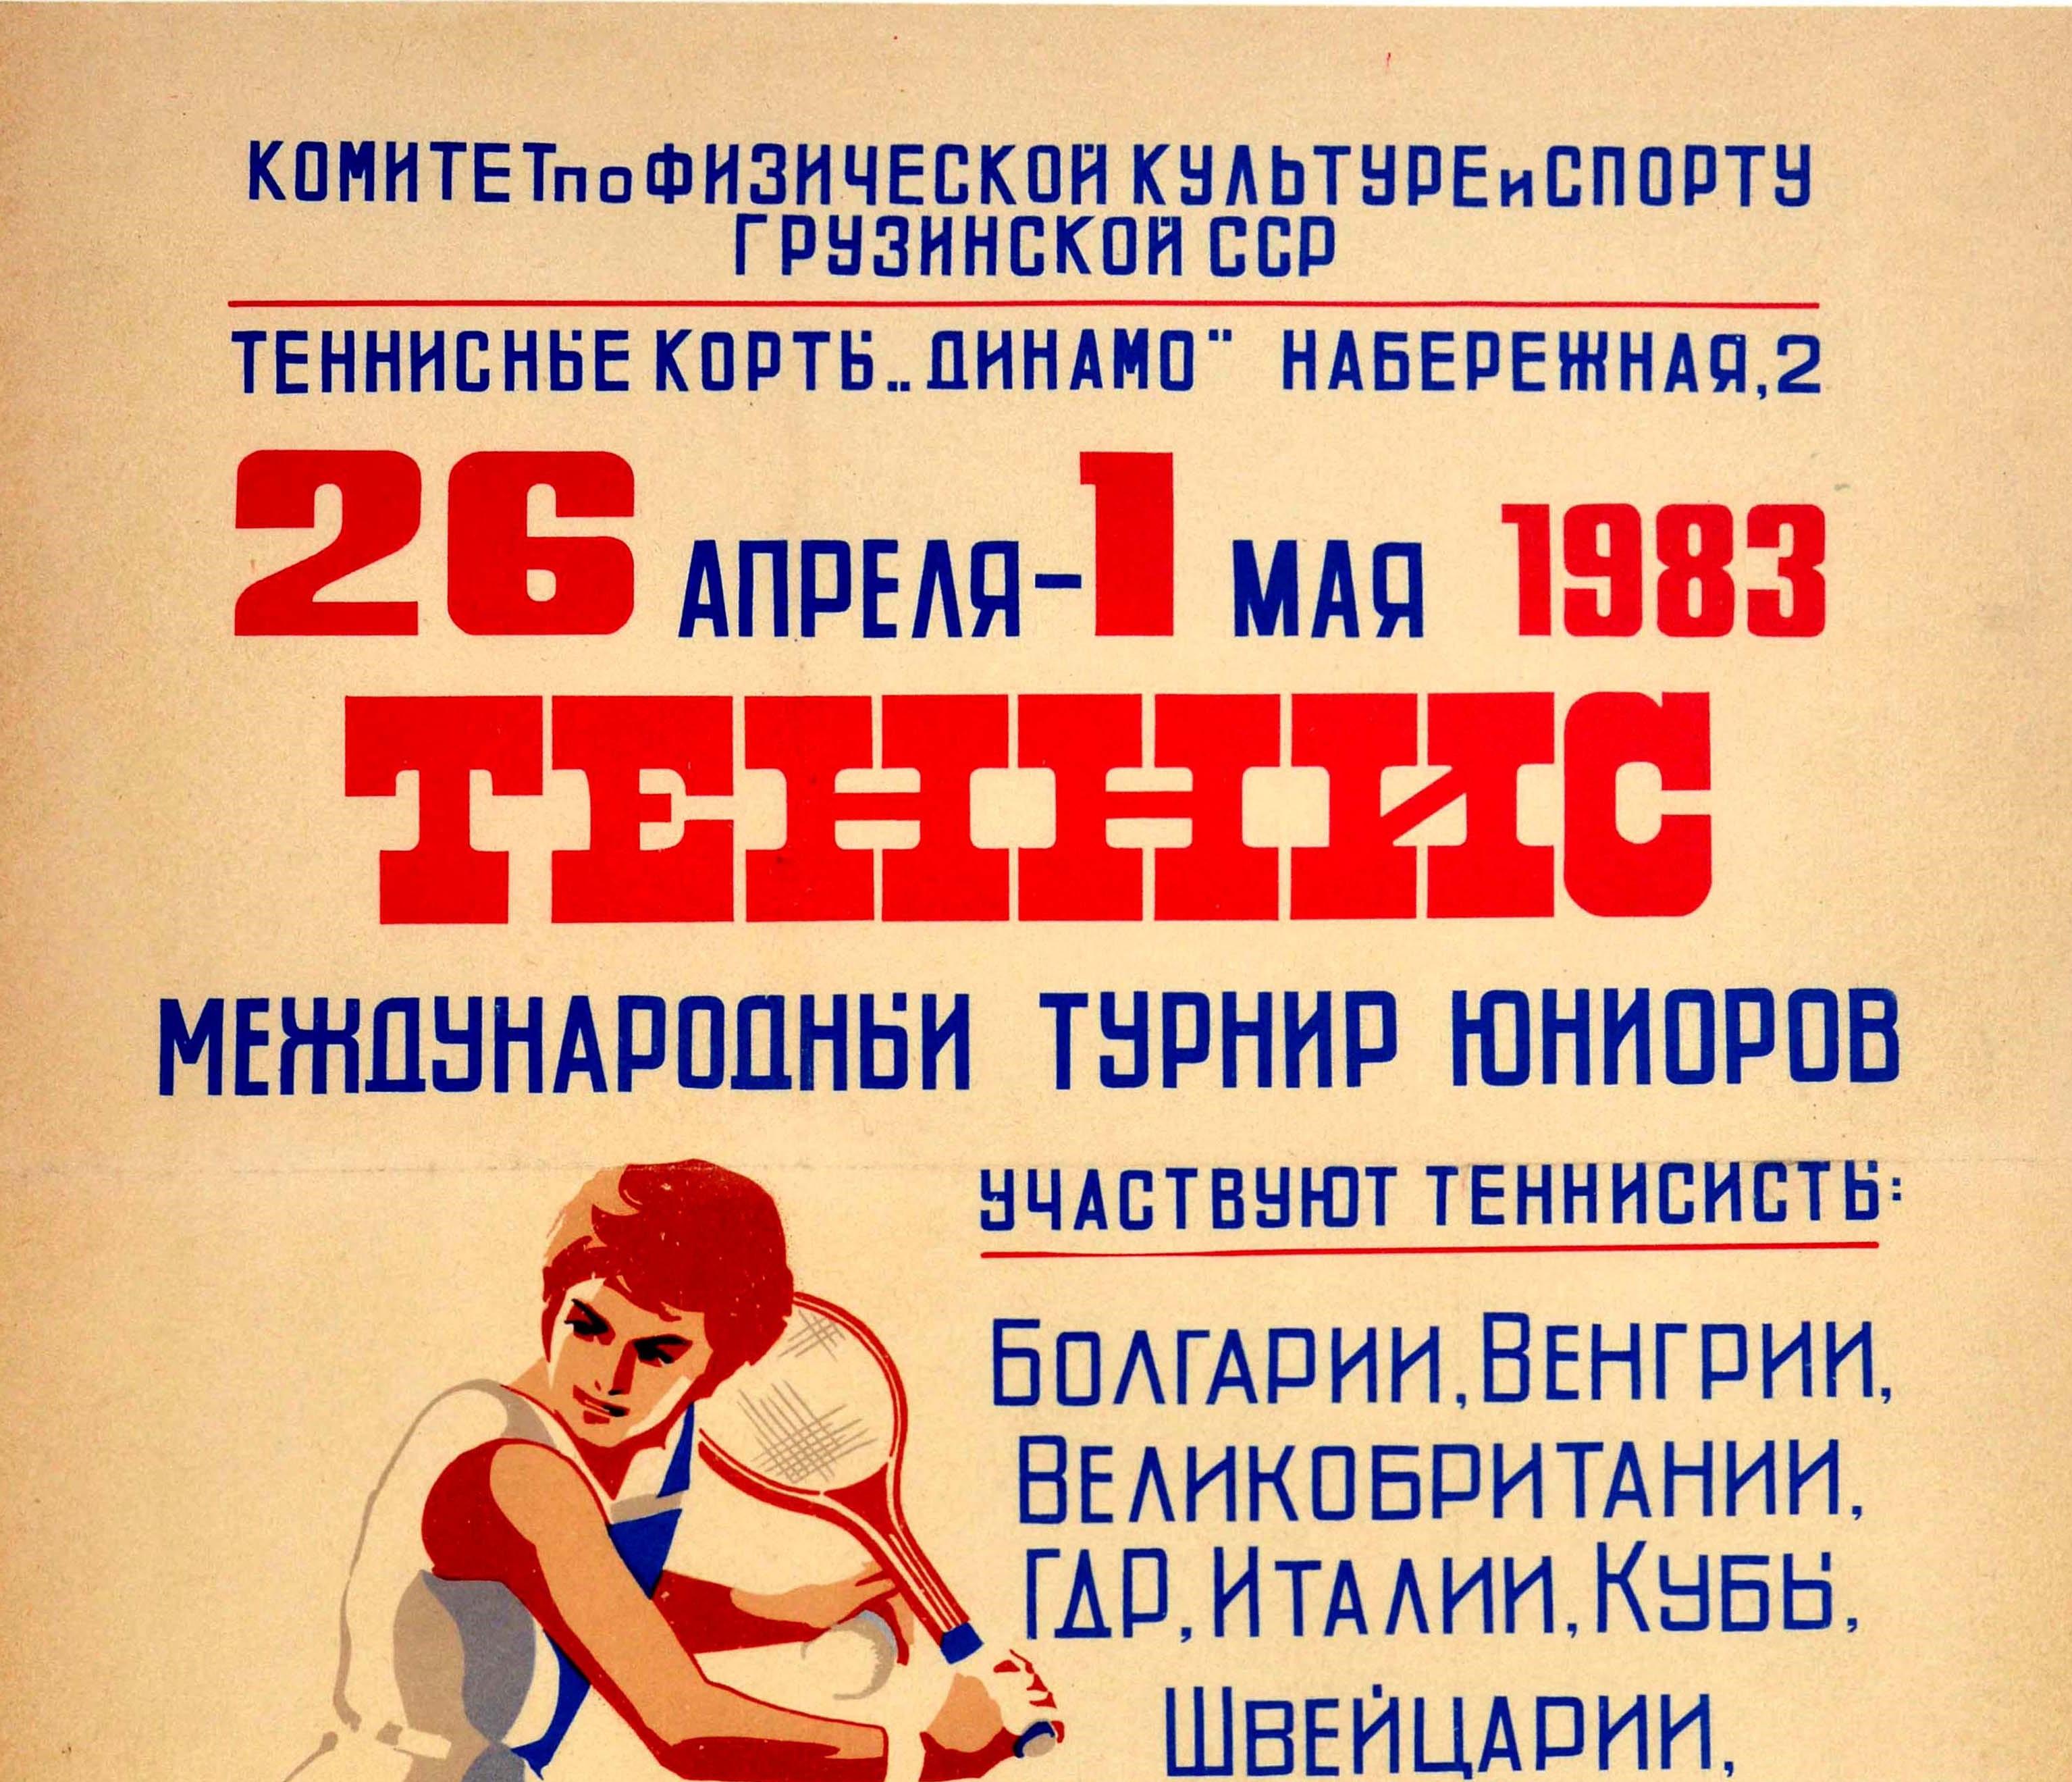 Affiche sportive soviétique vintage originale pour un tournoi international de tennis junior qui s'est déroulé du 26 avril au 1er mai 1983 sur le court de tennis Dynamo à Tbilissi (Géorgie). Elle présente un superbe dessin d'une fille balançant une